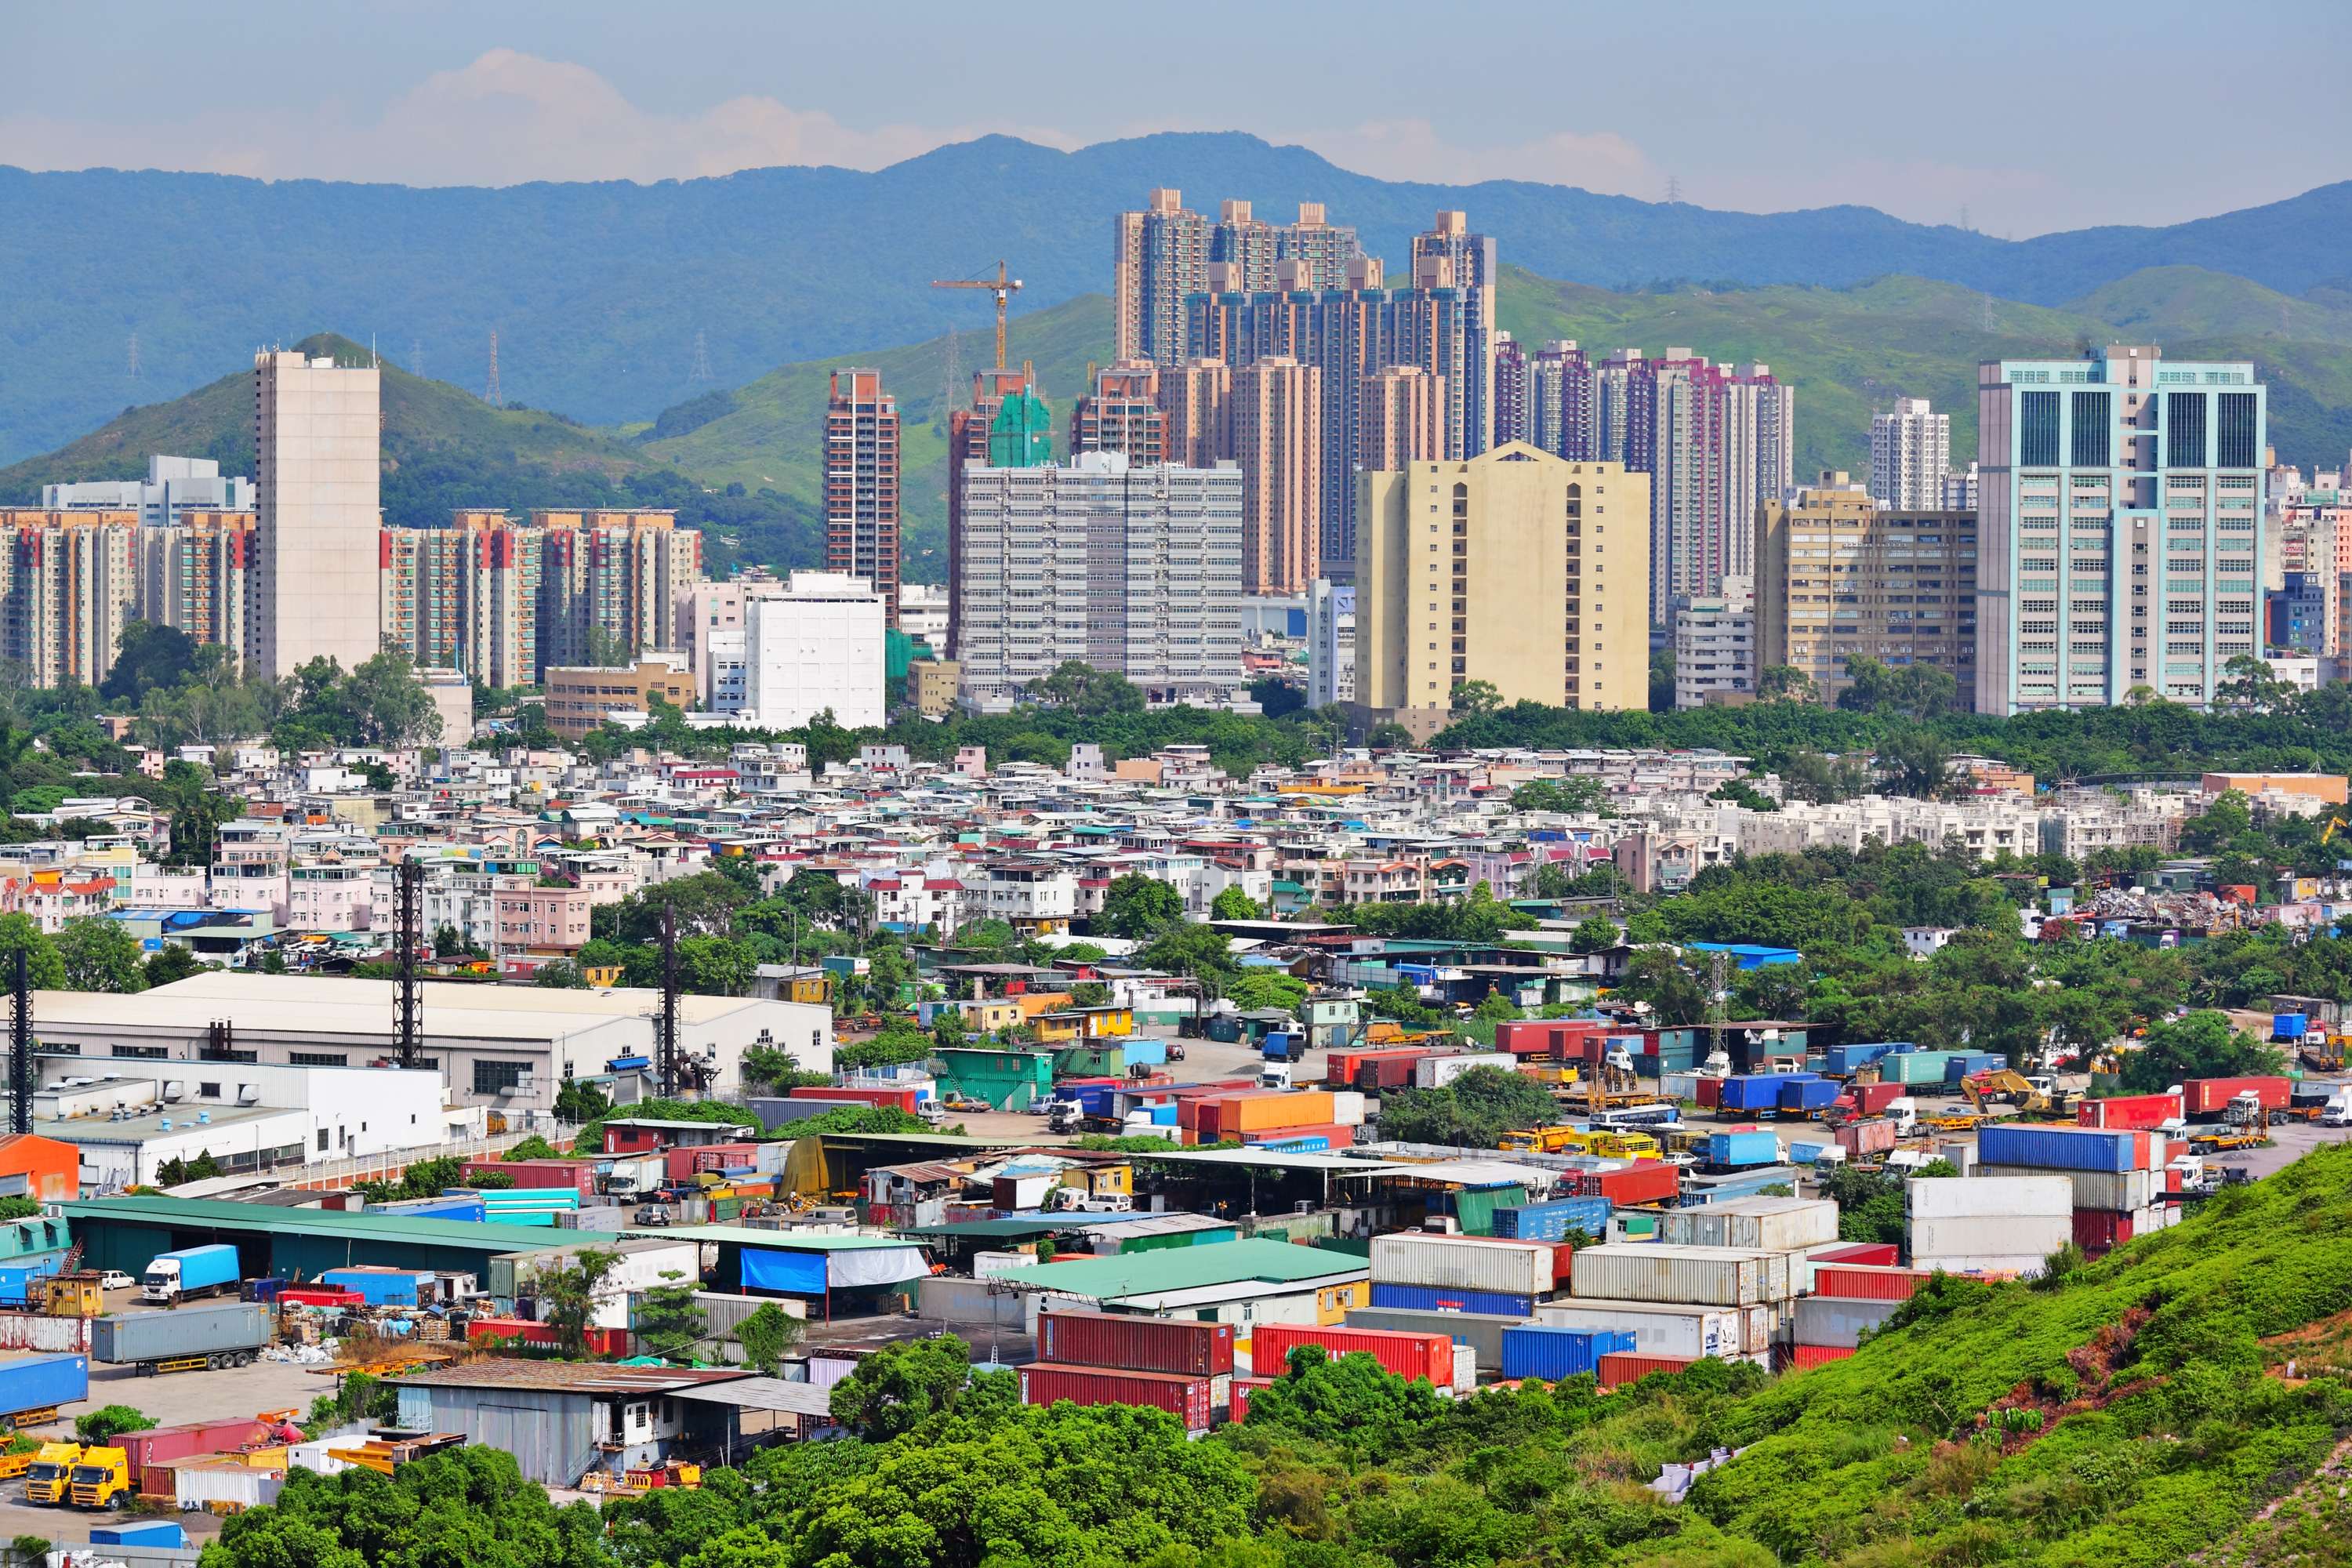 The controversial housing project is in Wang Chau, Yuen Long. Photo: Shutterstock